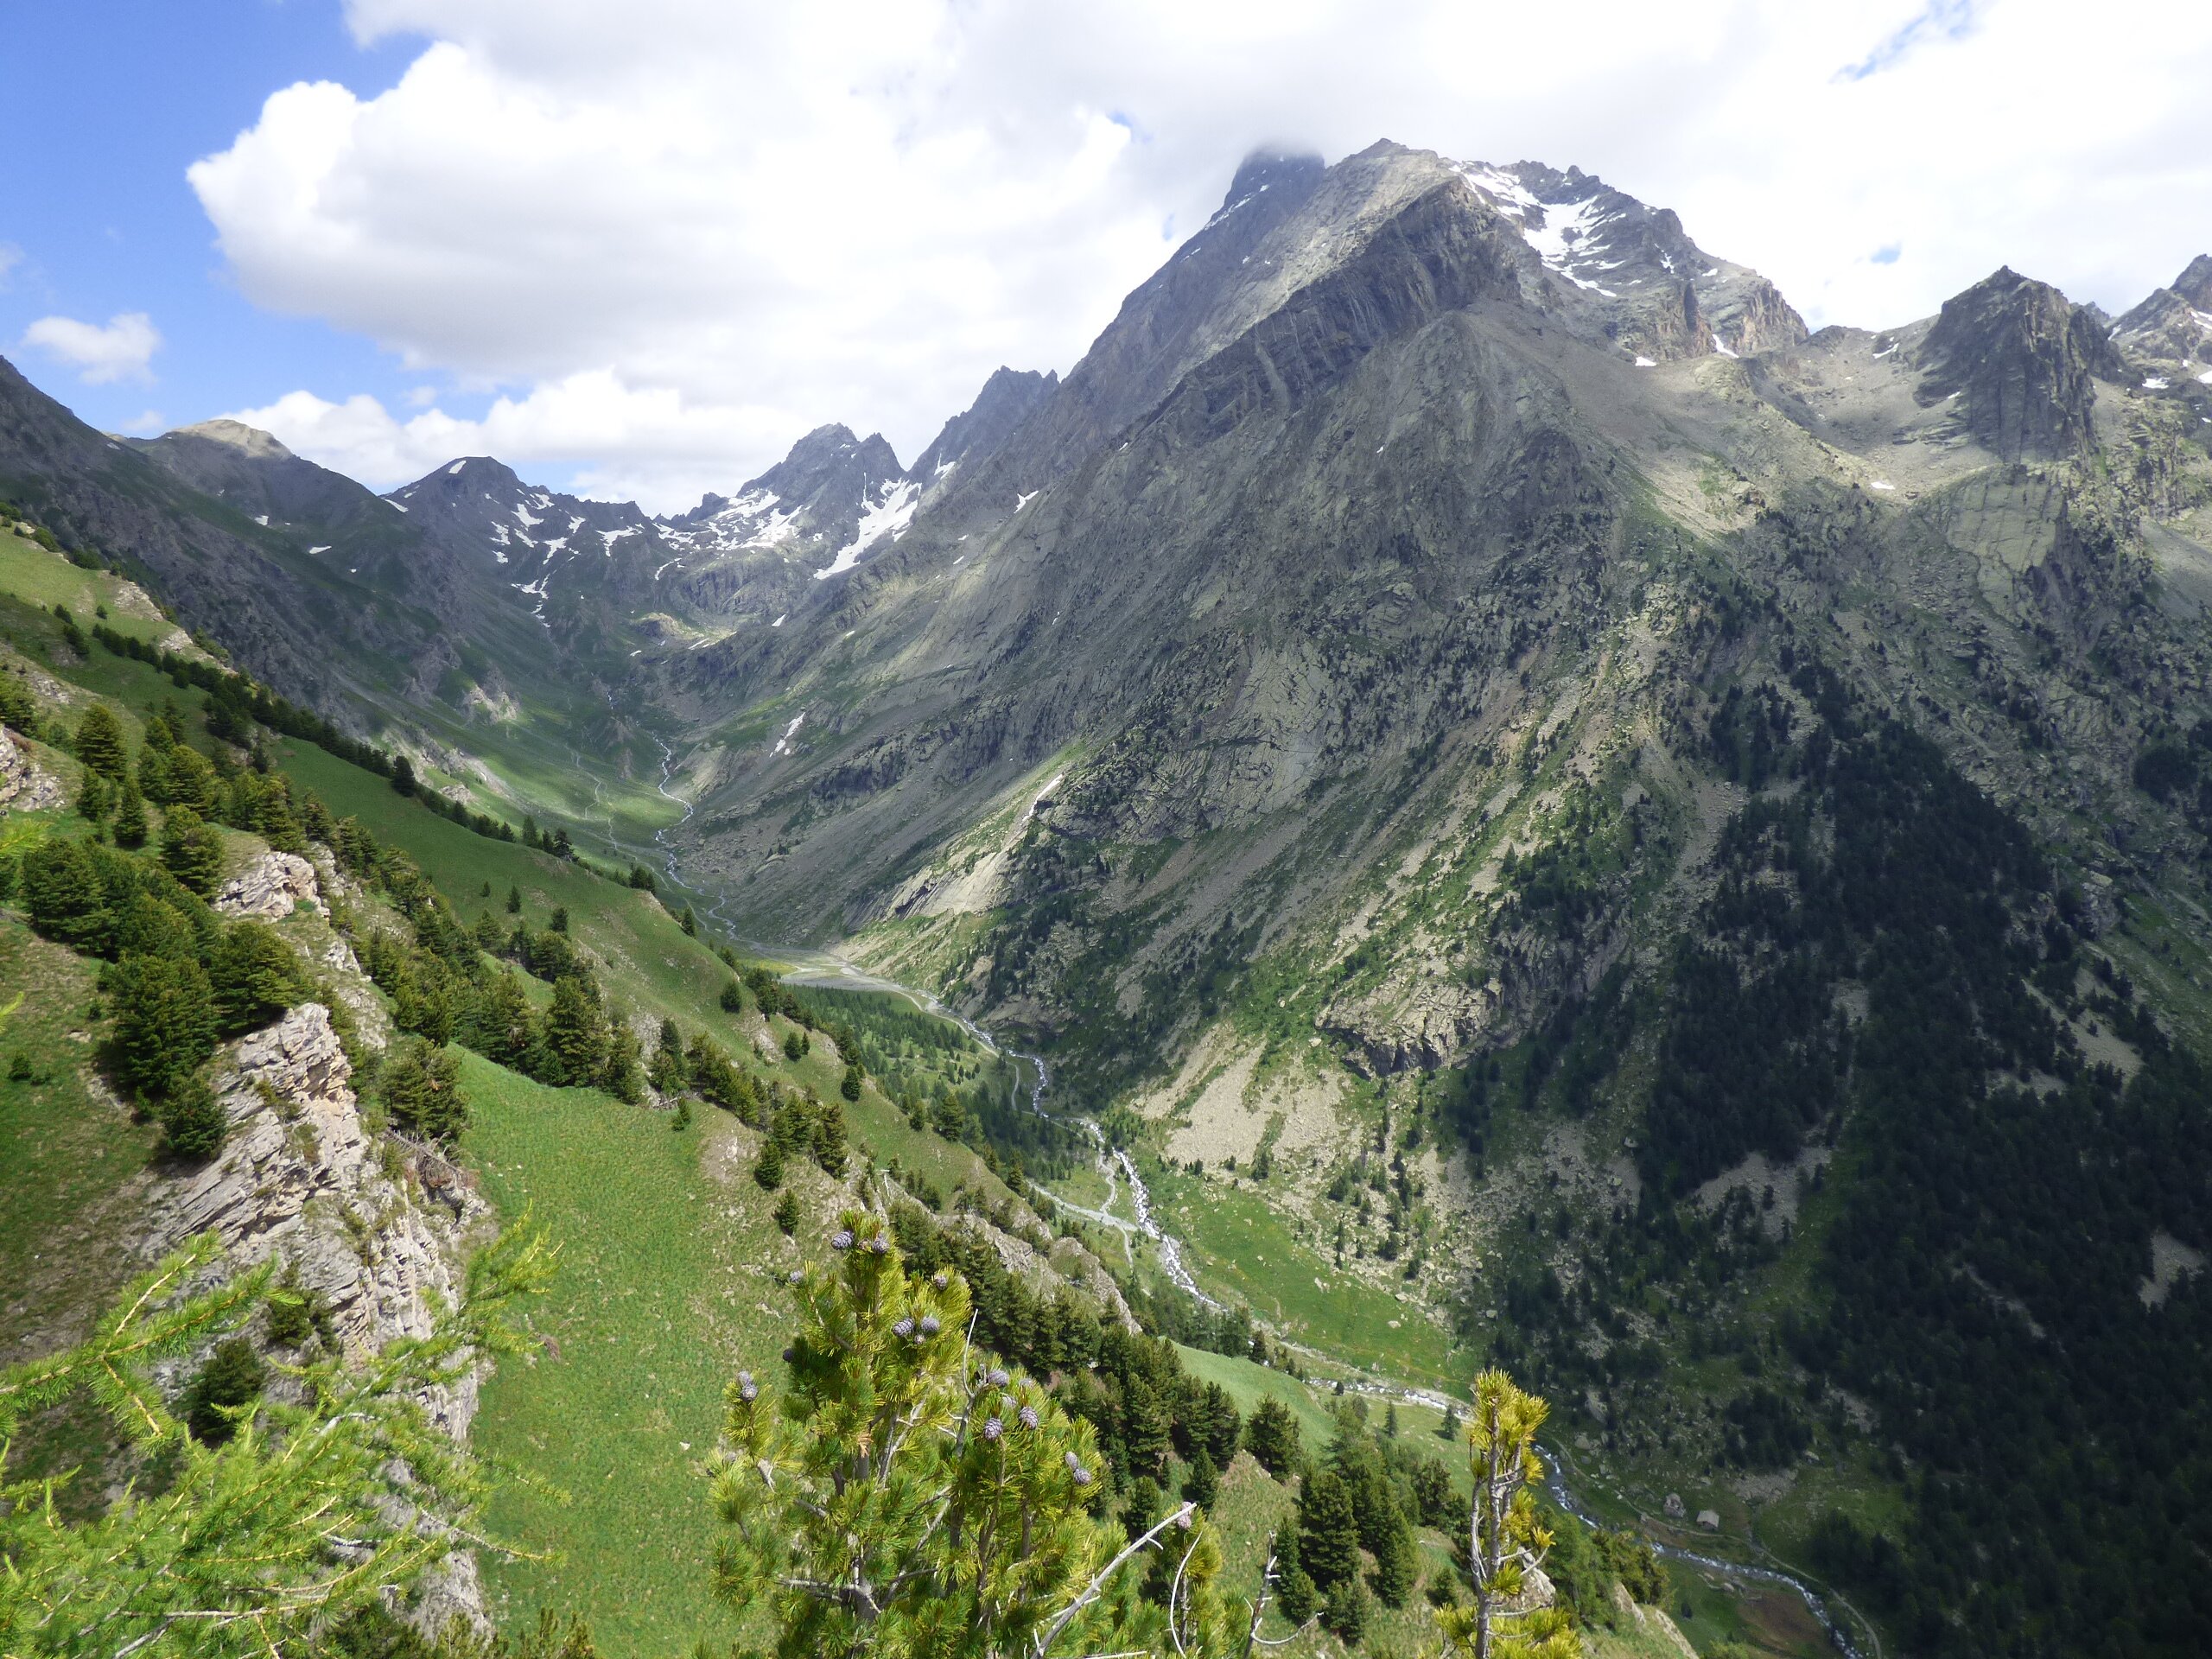 vallone di vallanta visto dall'alto, praterie alpine con qualche albero sulla sinistra, sulla destra il massiccio del monviso; cielo con nuvole